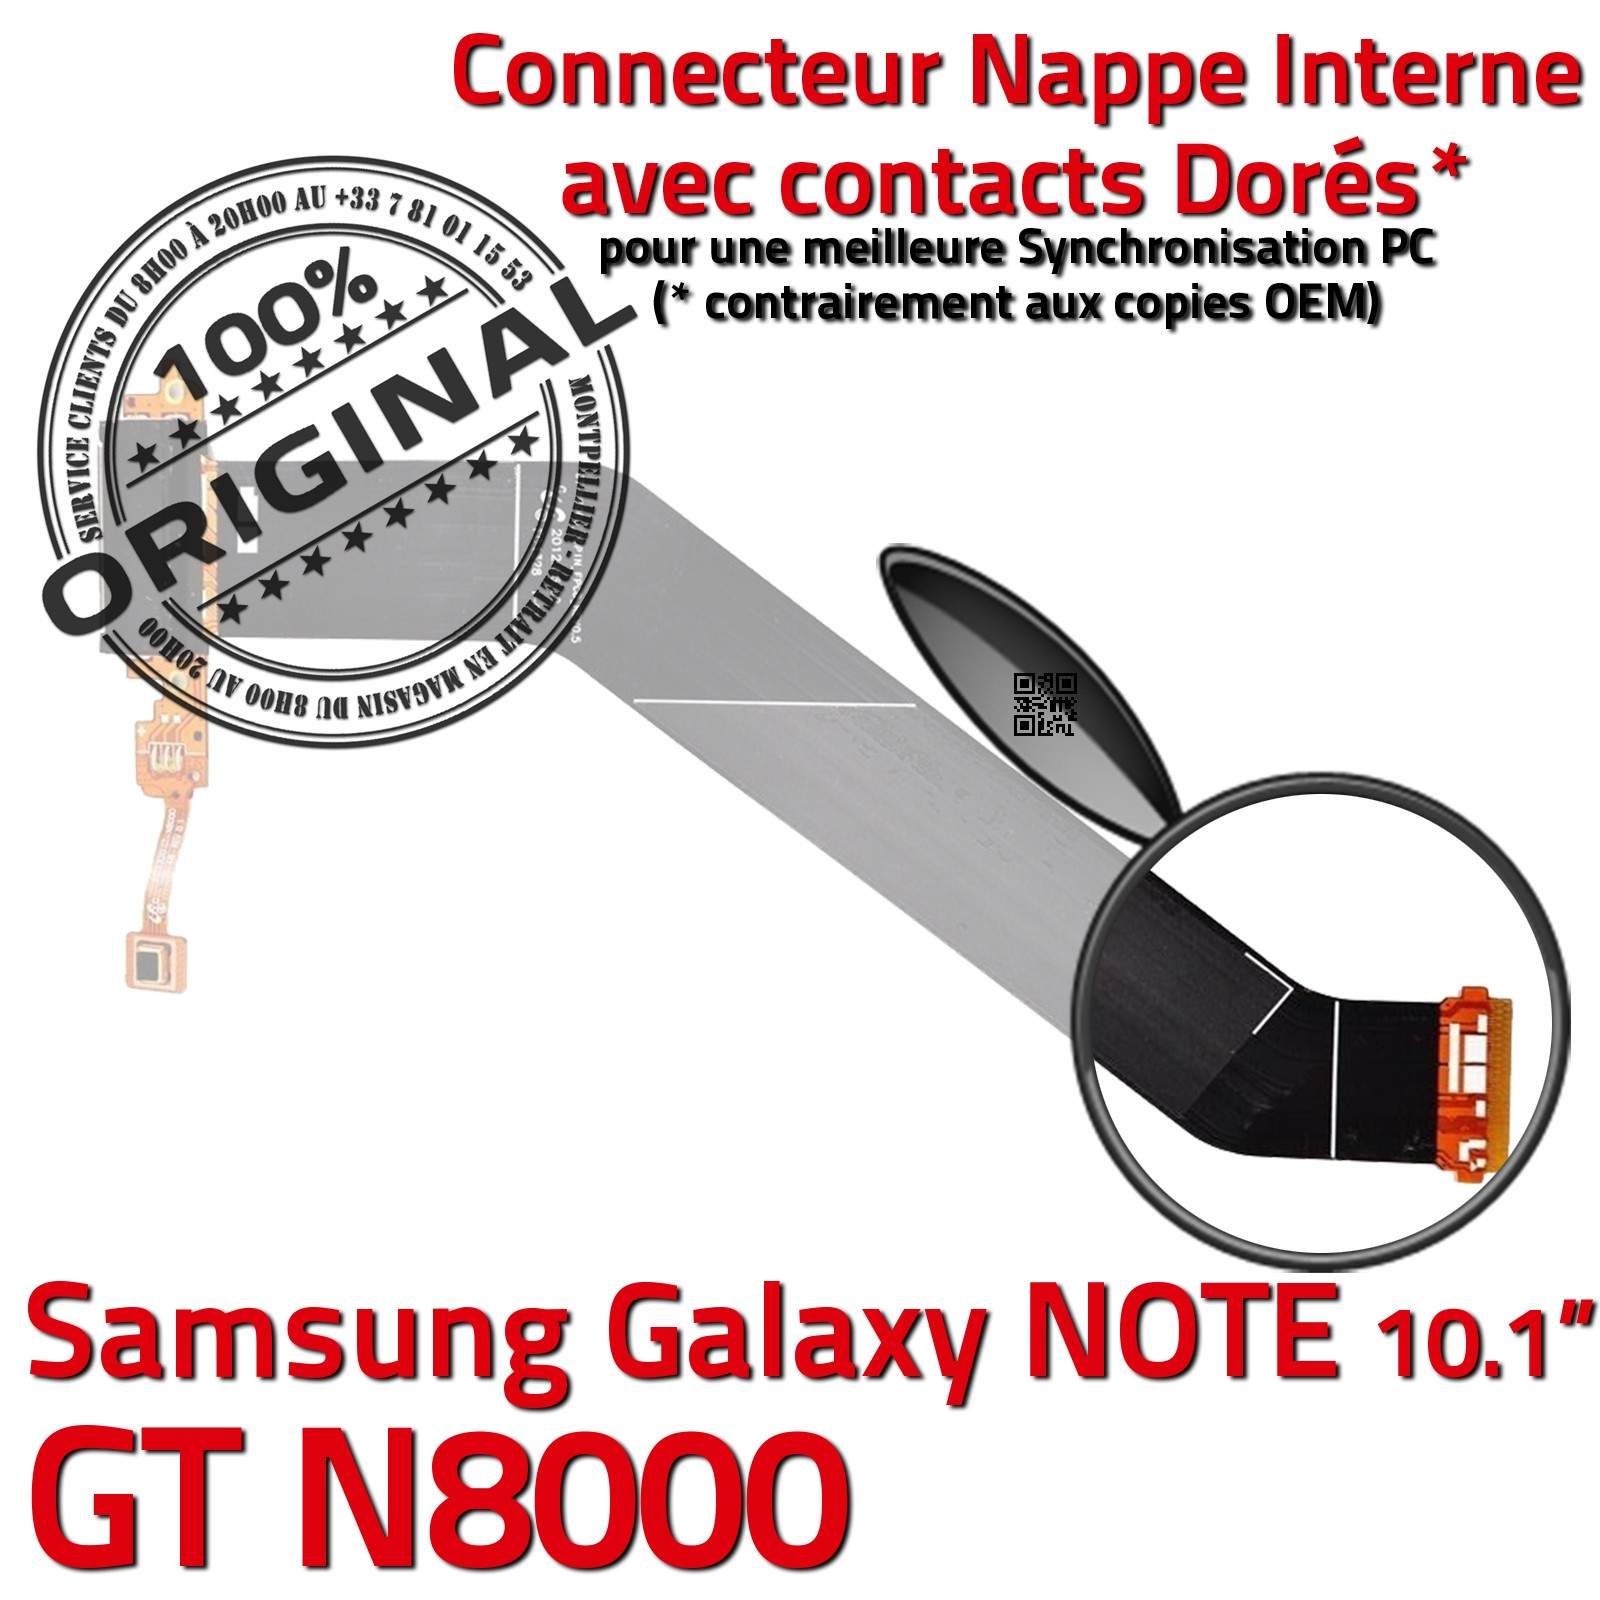 ORIGINAL Samsung Galaxy NOTE GT N8000 Connecteur de Charge Micro USB Nappe Chargeur OFFICIELLE Qualité Contacts Dorés Réparation